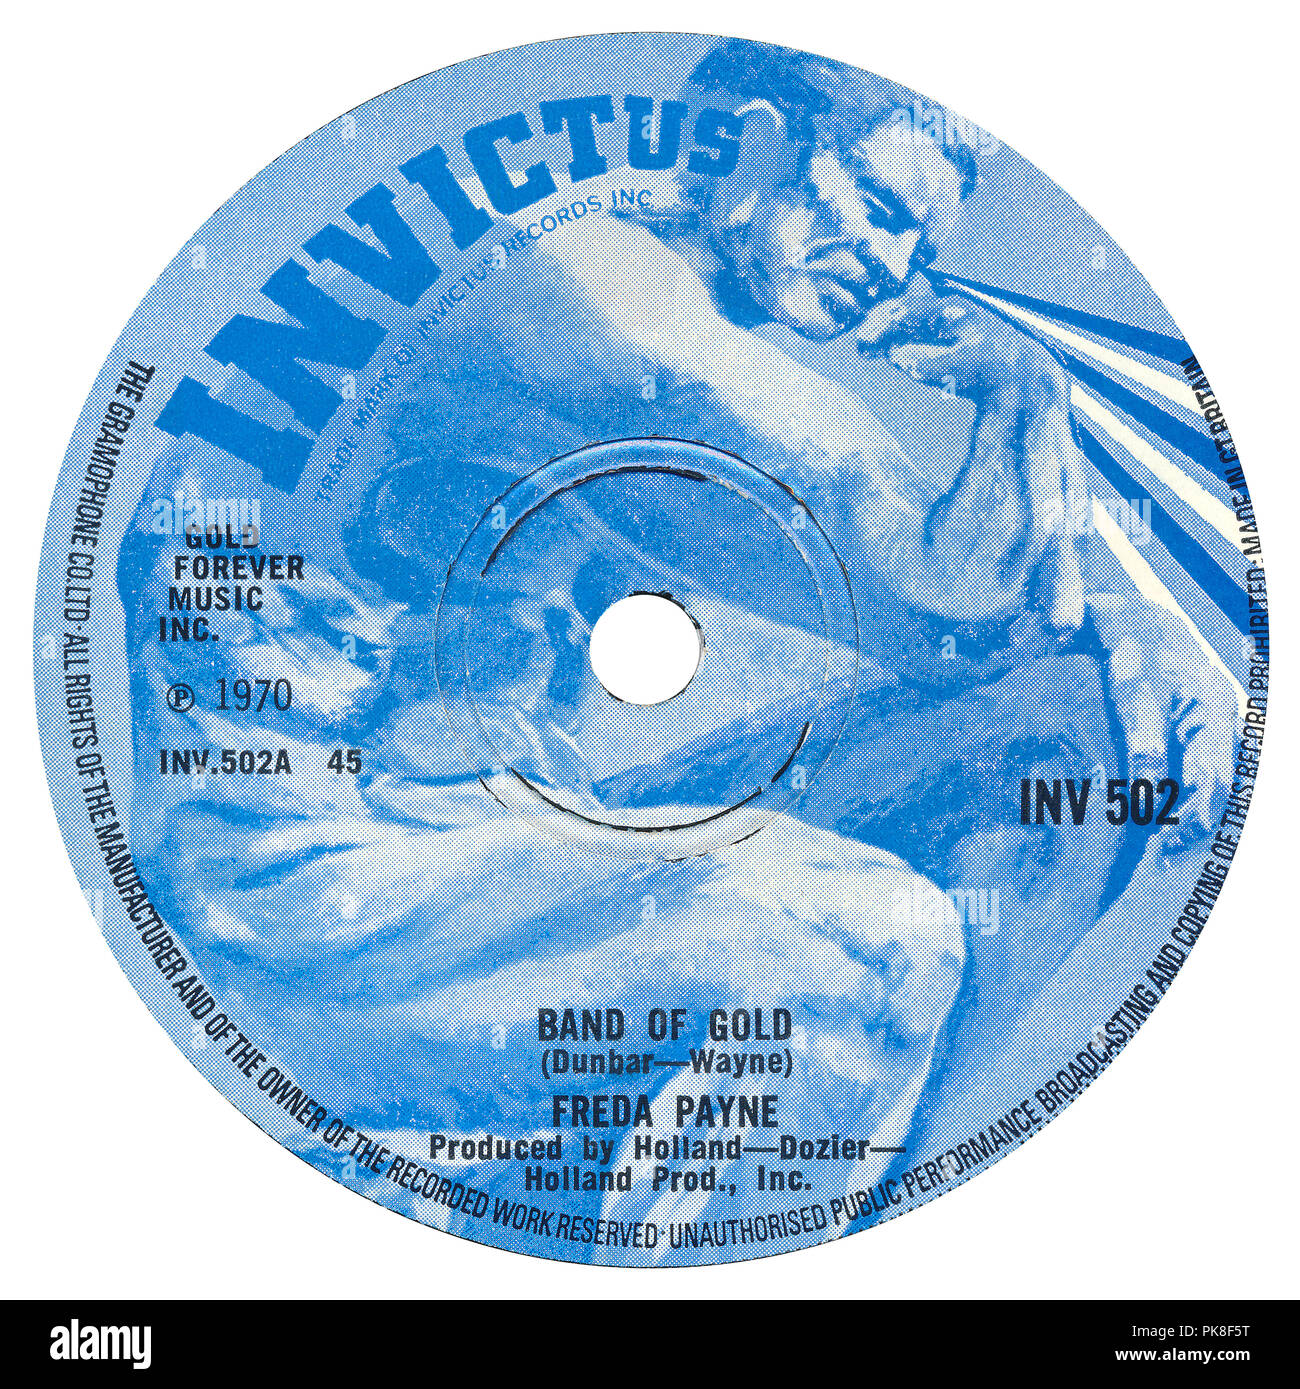 UK 45 U/min 7"-Single der Band von Gold von Freda Payne auf dem Etikett Invictus von 1970. Von Ron Dunbar geschrieben und 'Edythe Wayne" (ein Pseudonym für Holland-Dozier-Holland.) von Brian Holland, Lamont Dozier, Eddie Holland hergestellt. Stockfoto